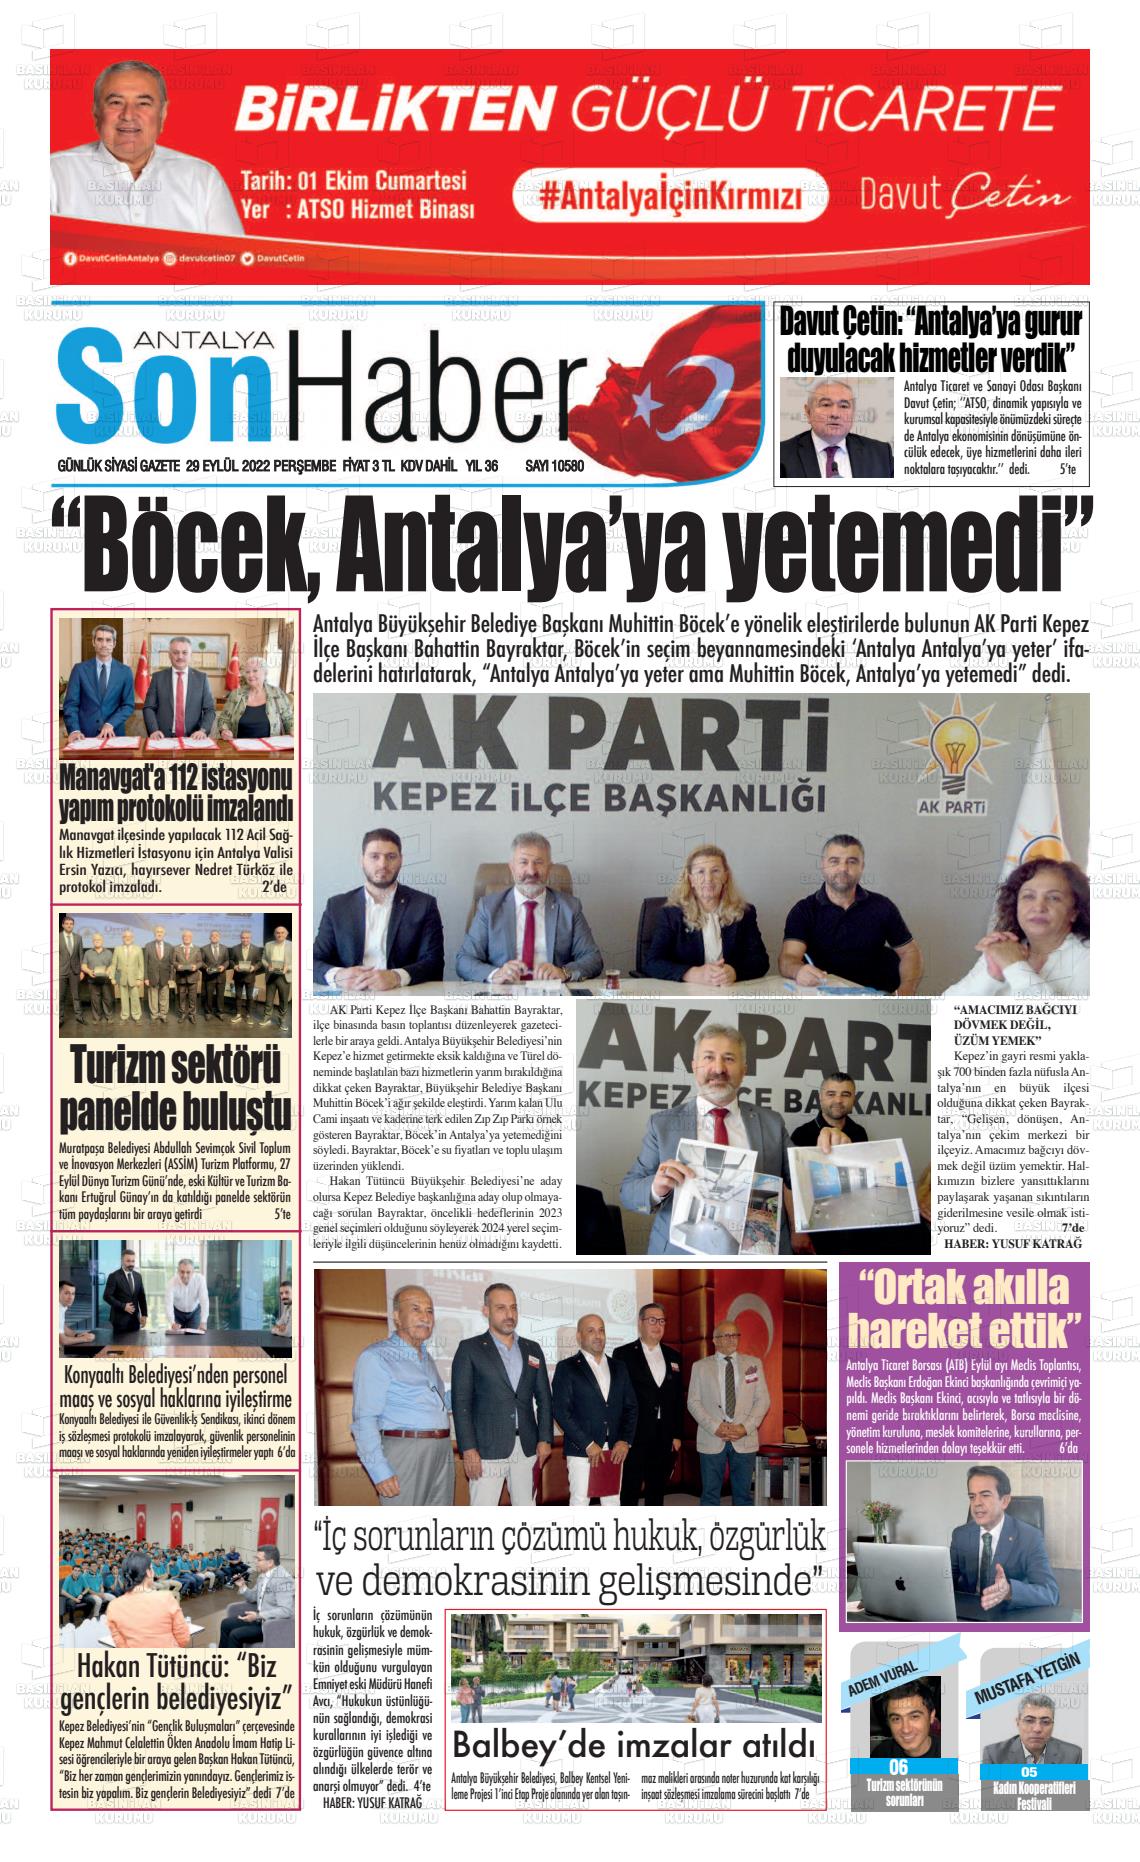 29 Eylül 2022 Antalya Son Haber Gazete Manşeti